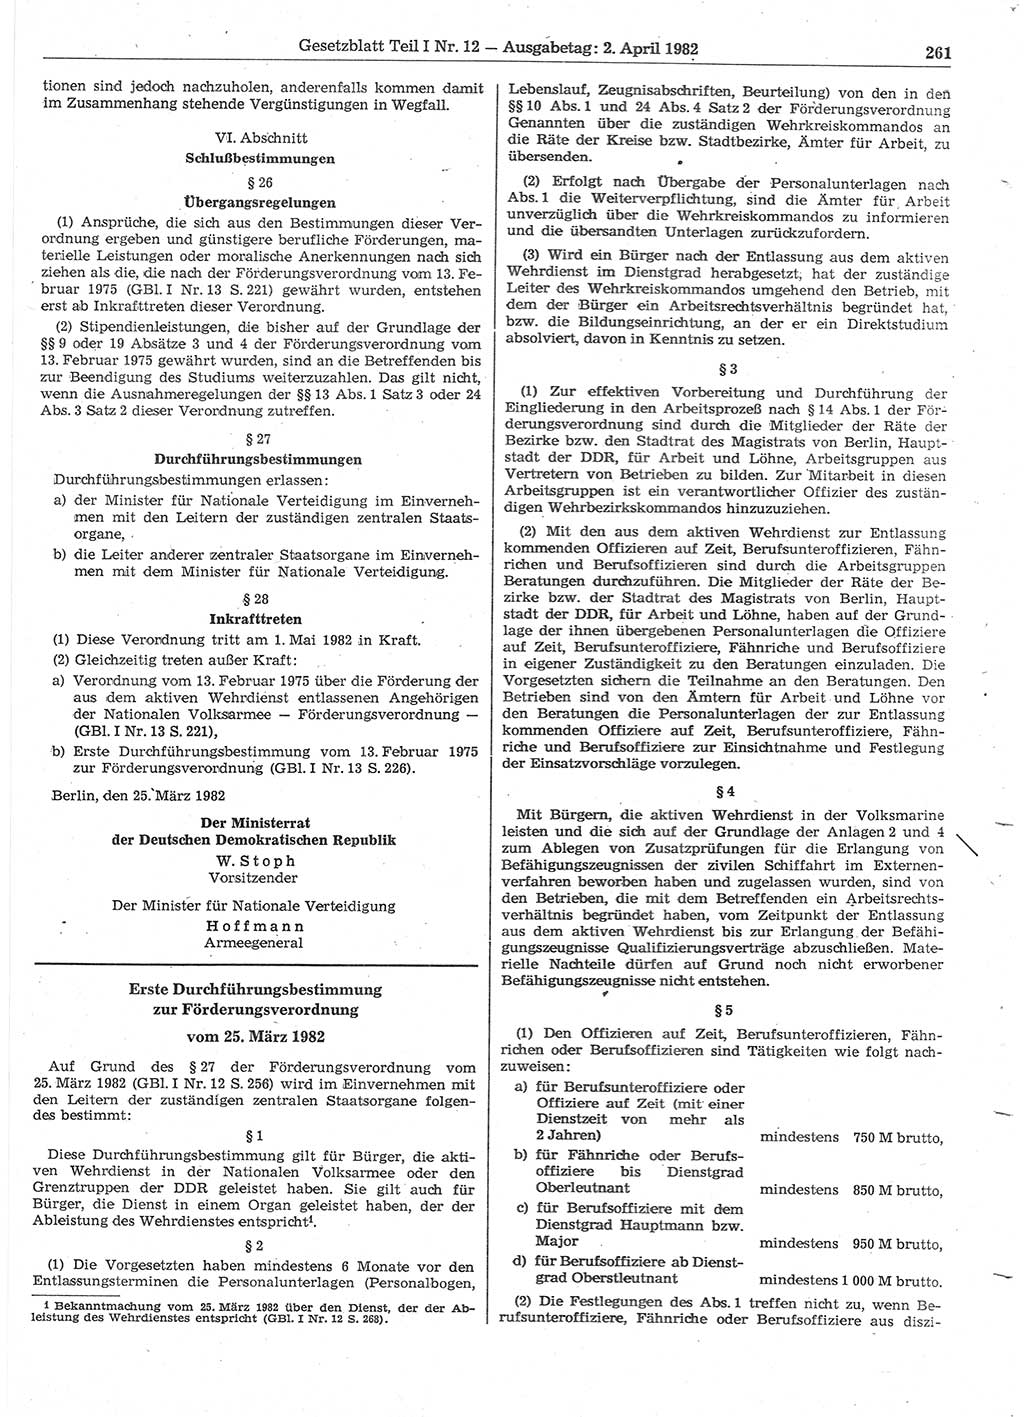 Gesetzblatt (GBl.) der Deutschen Demokratischen Republik (DDR) Teil Ⅰ 1982, Seite 261 (GBl. DDR Ⅰ 1982, S. 261)